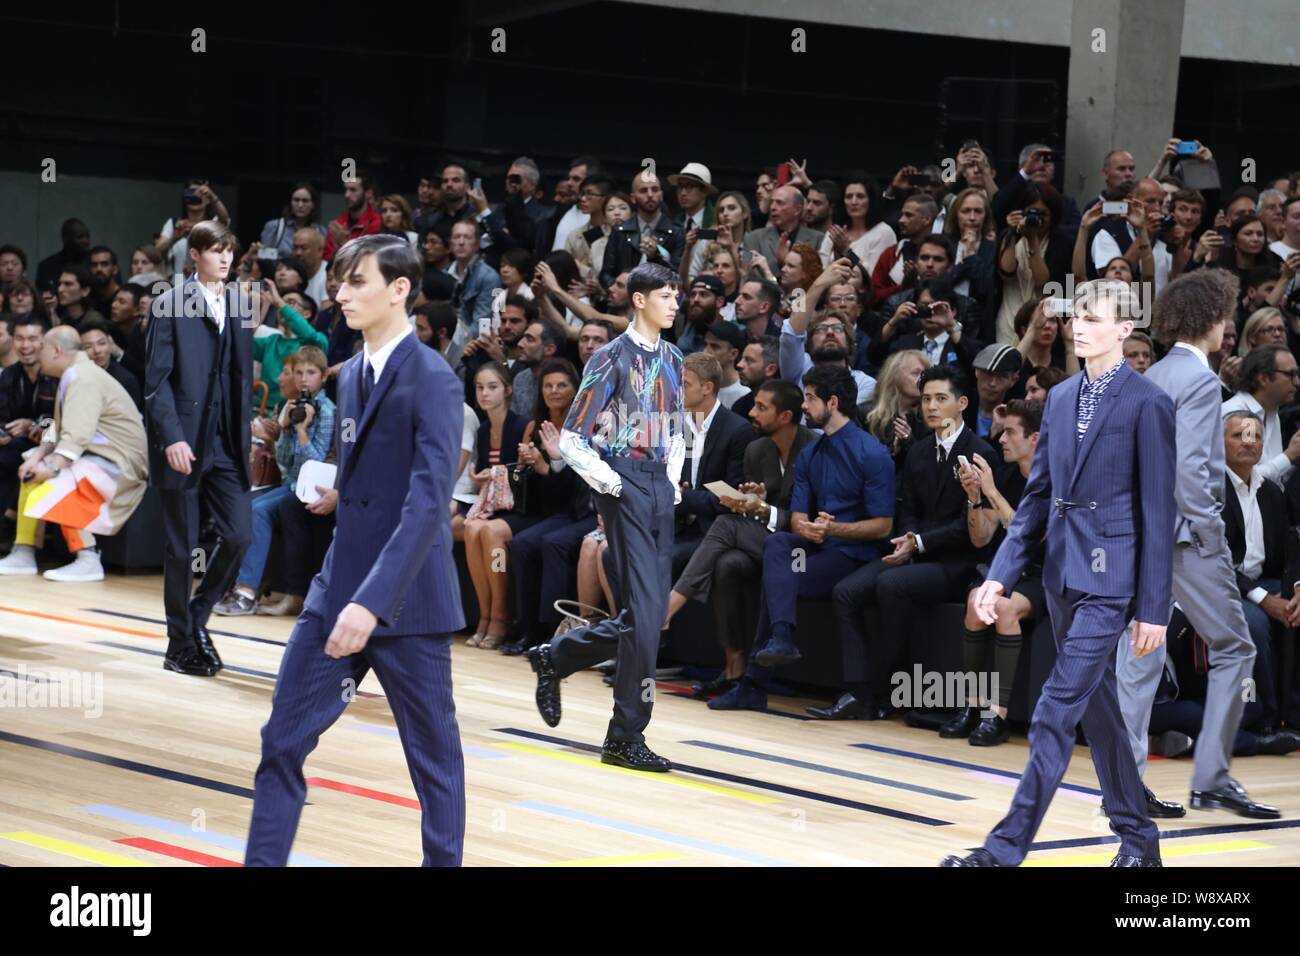 Visualizzazione modelli nuove creazioni di Dior Homme Fashion Show durante il 2015 Primavera/Estate Parigi Mens della settimana della moda di Parigi, Francia, 28 giugno 2014. Foto Stock